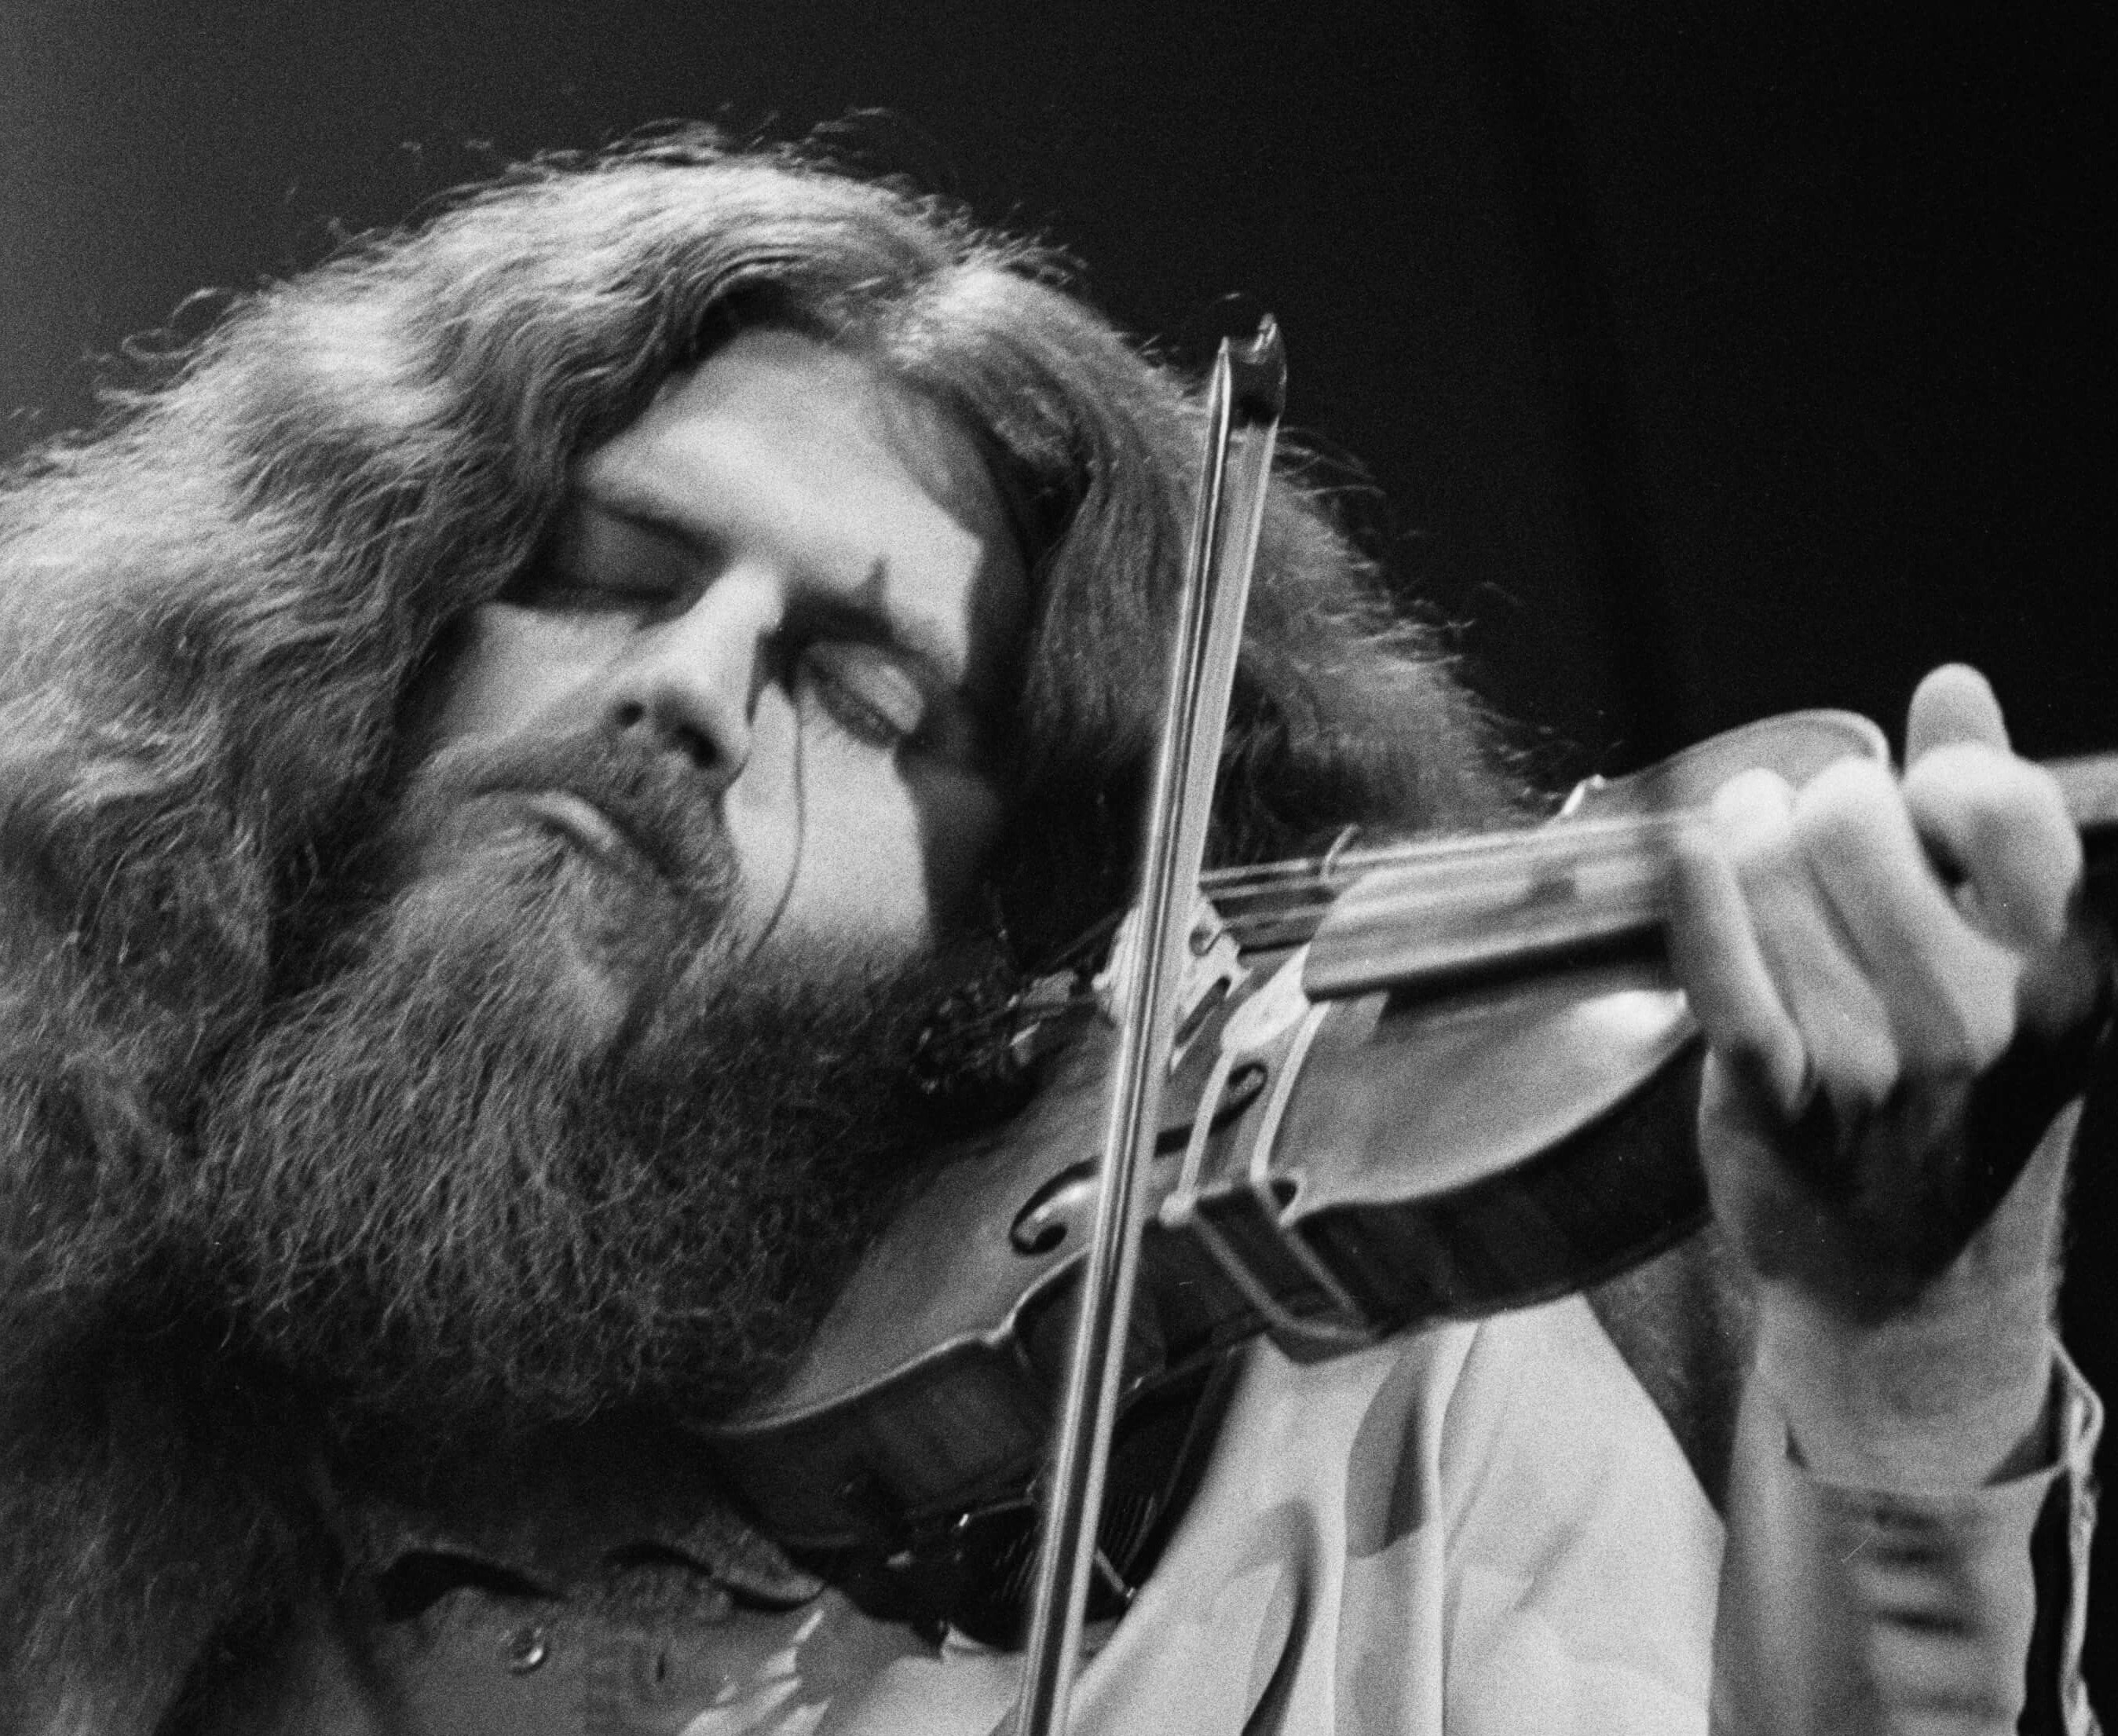 Kansas' Robby Steinhardt with a violin